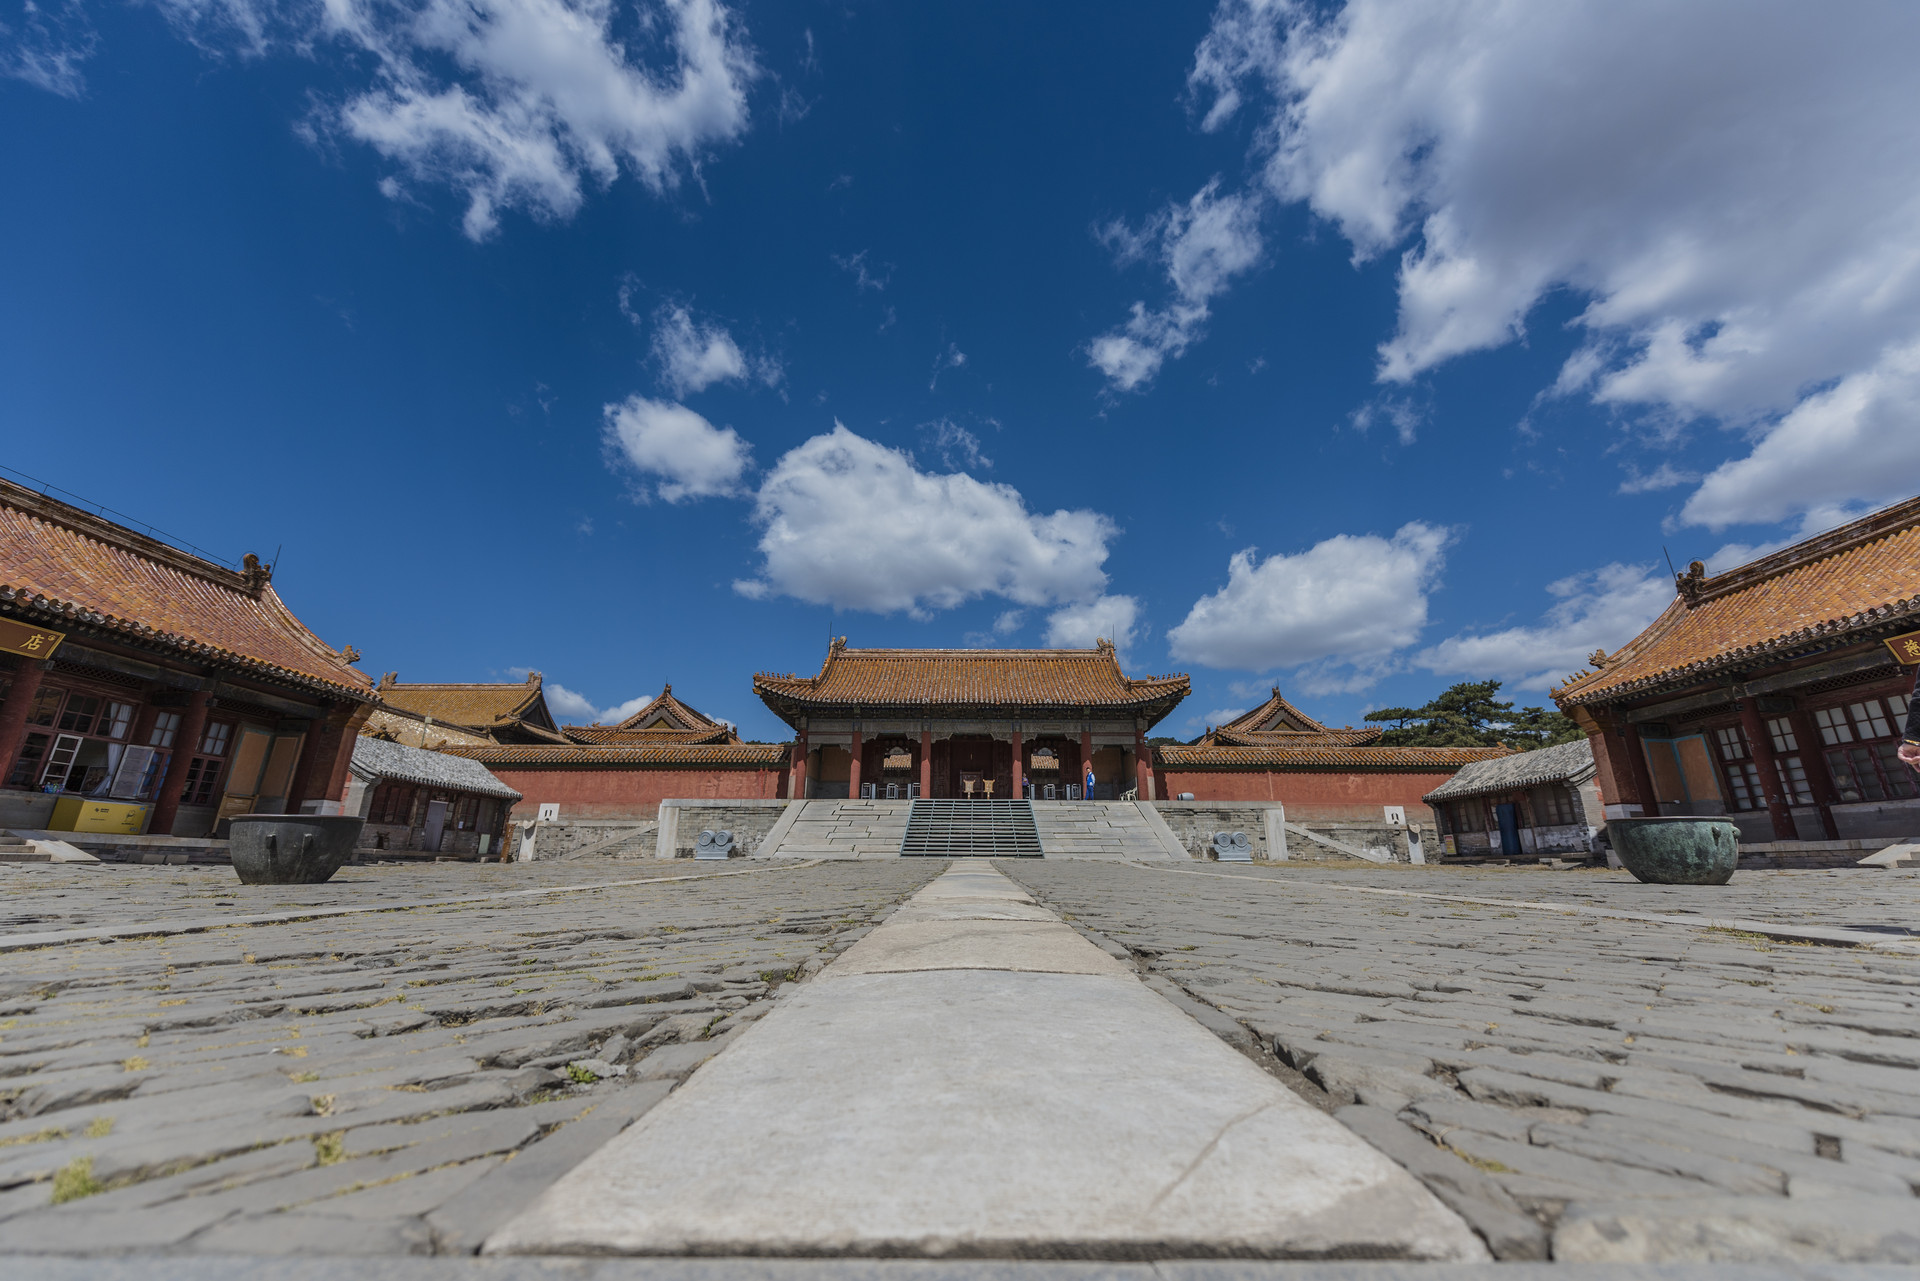 原创我国清朝的帝王陵,陆续修建247年成了世界文化遗产